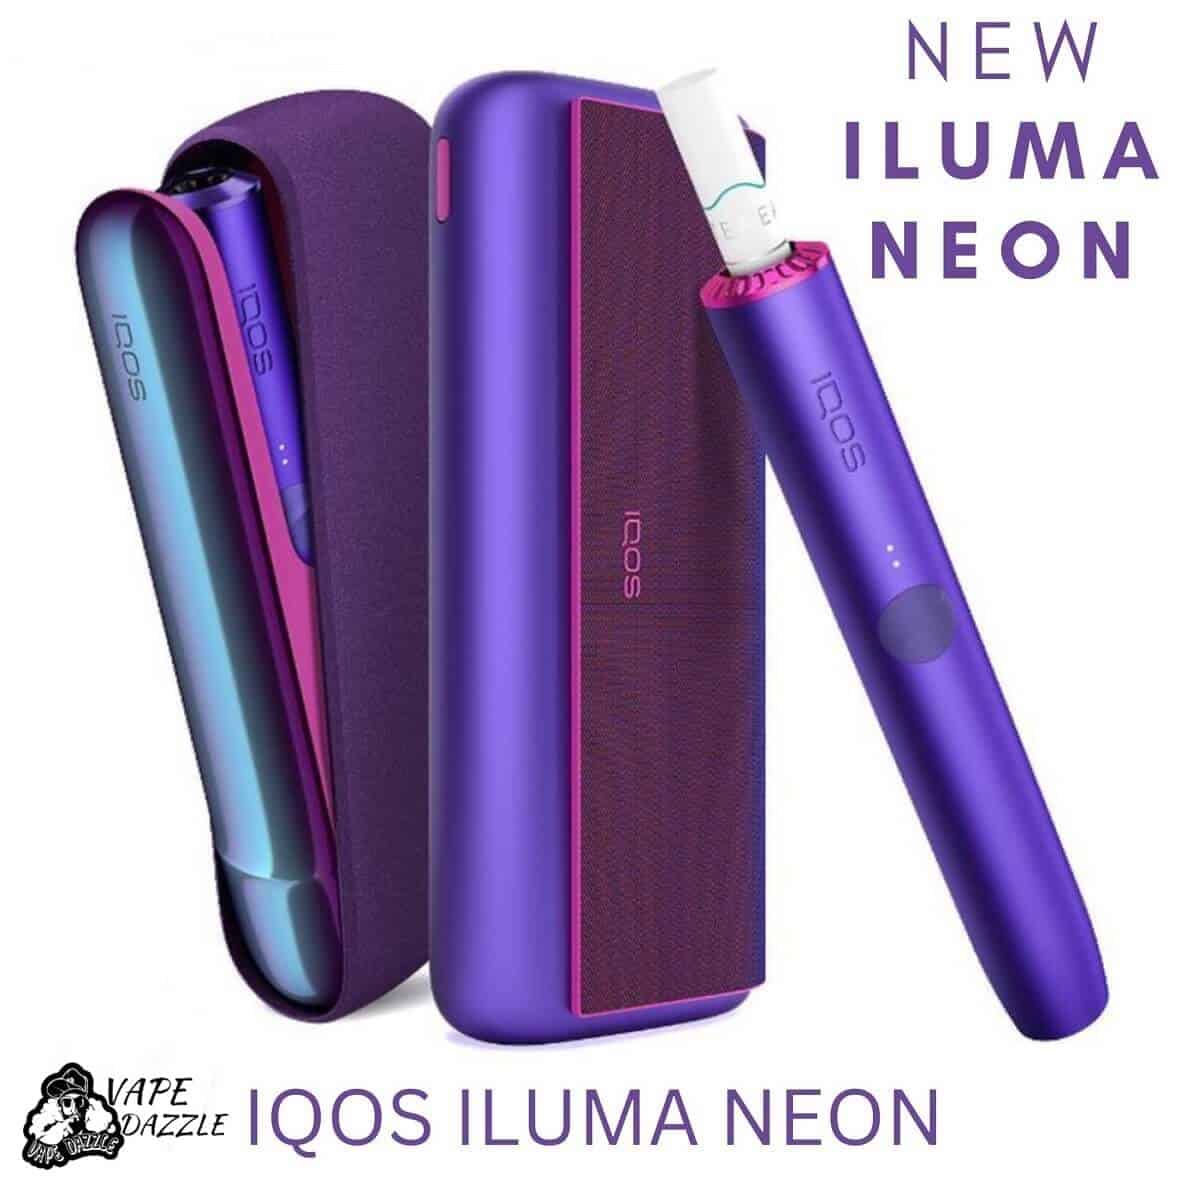 iQOS ILUMA NEON limited Editionよろしくお願いします